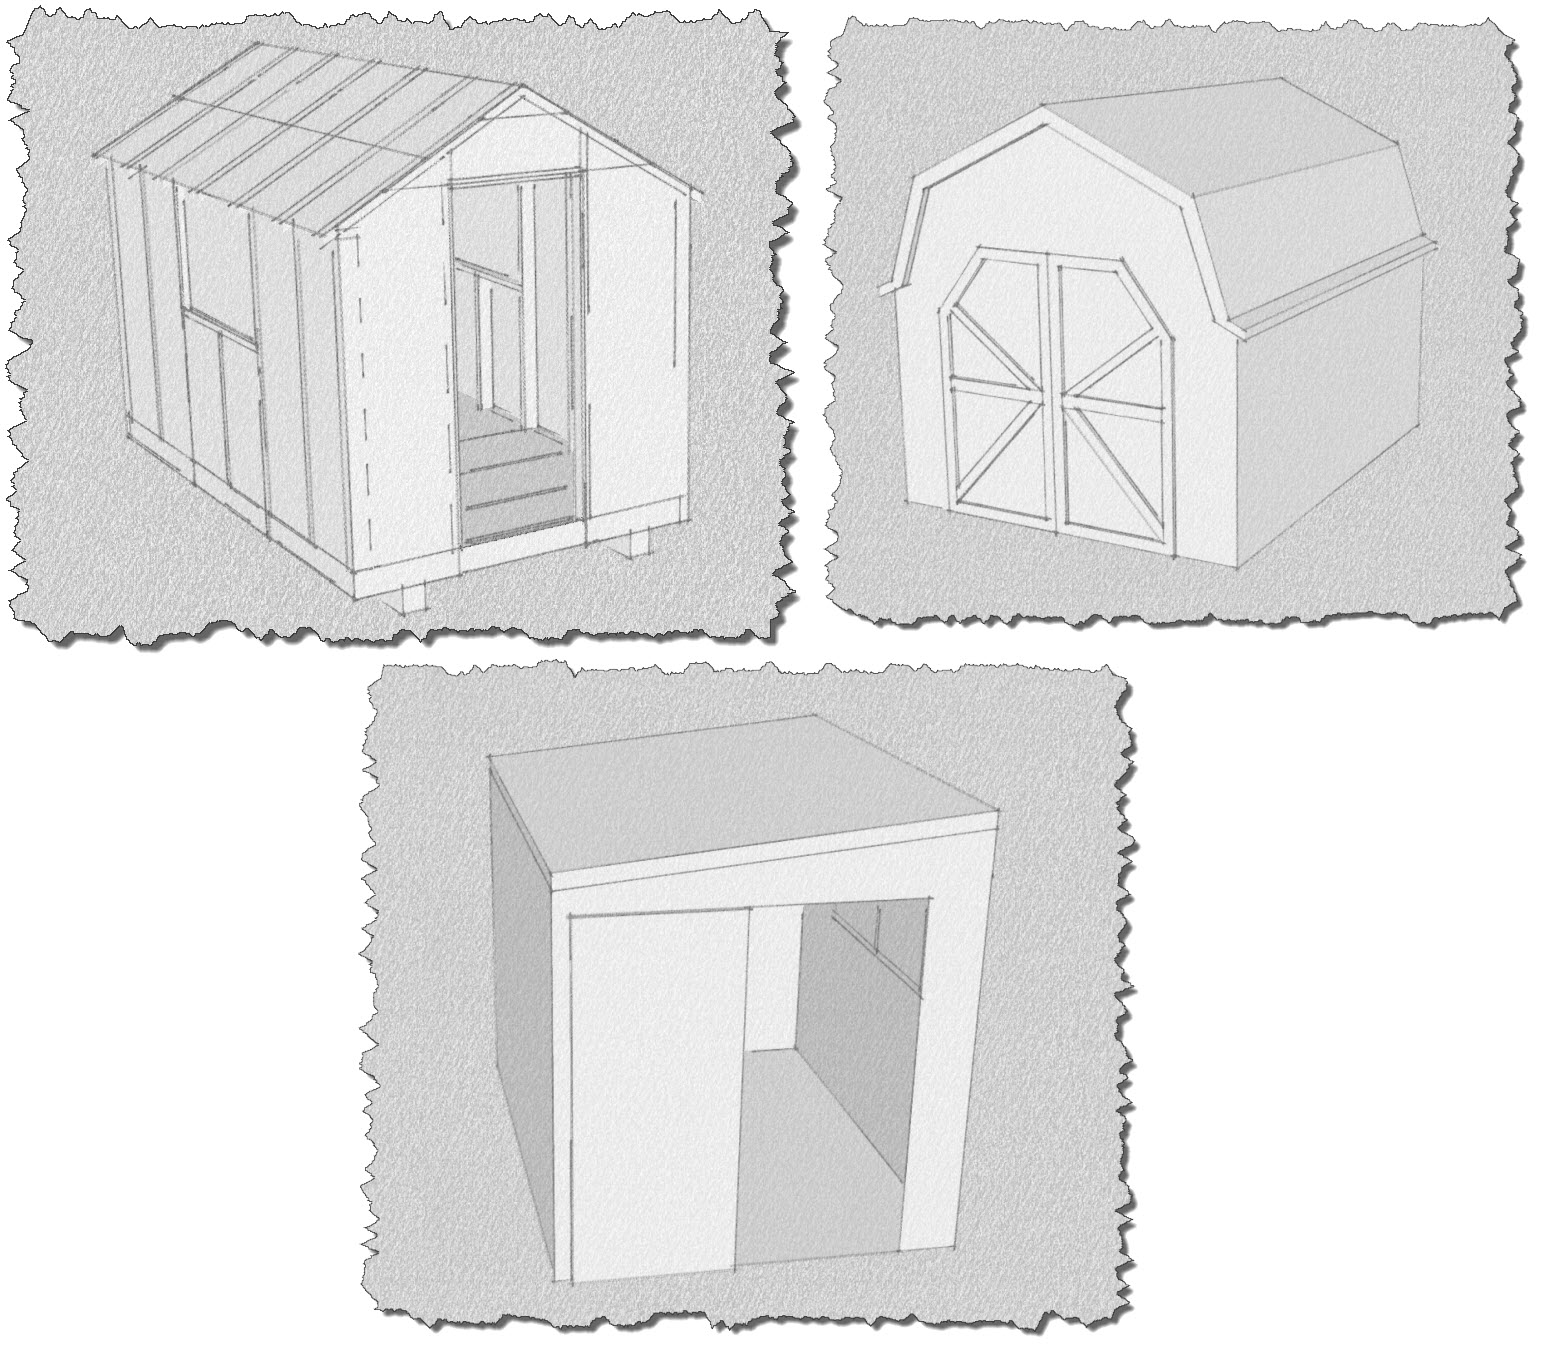 shed design software